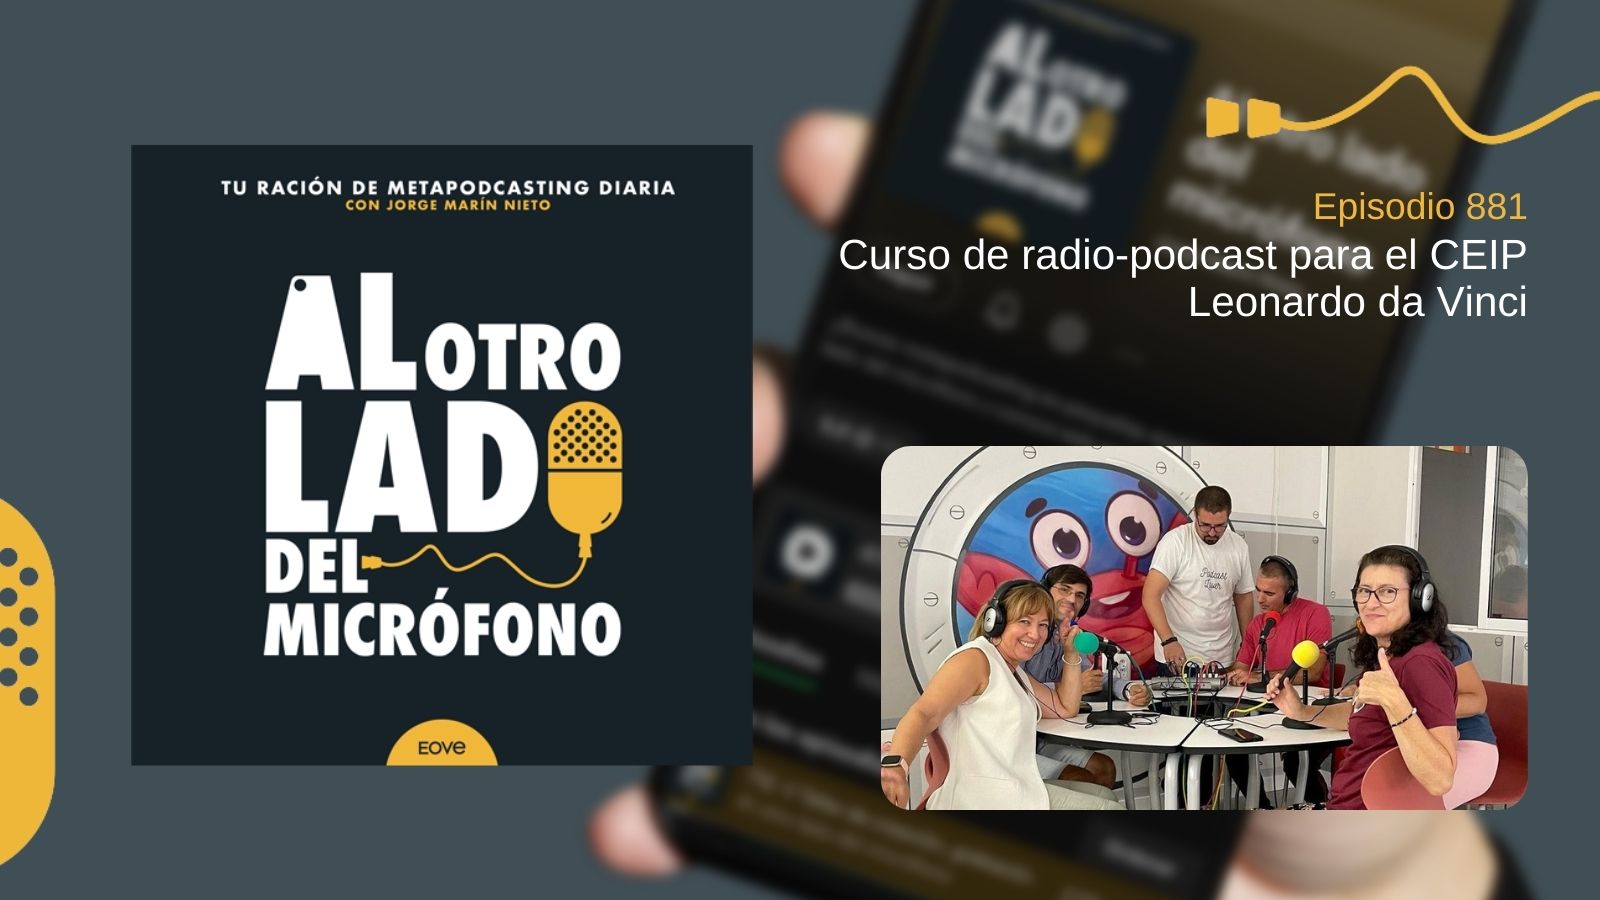 Curso de radio-podcast para el CEIP Leonardo da Vinci